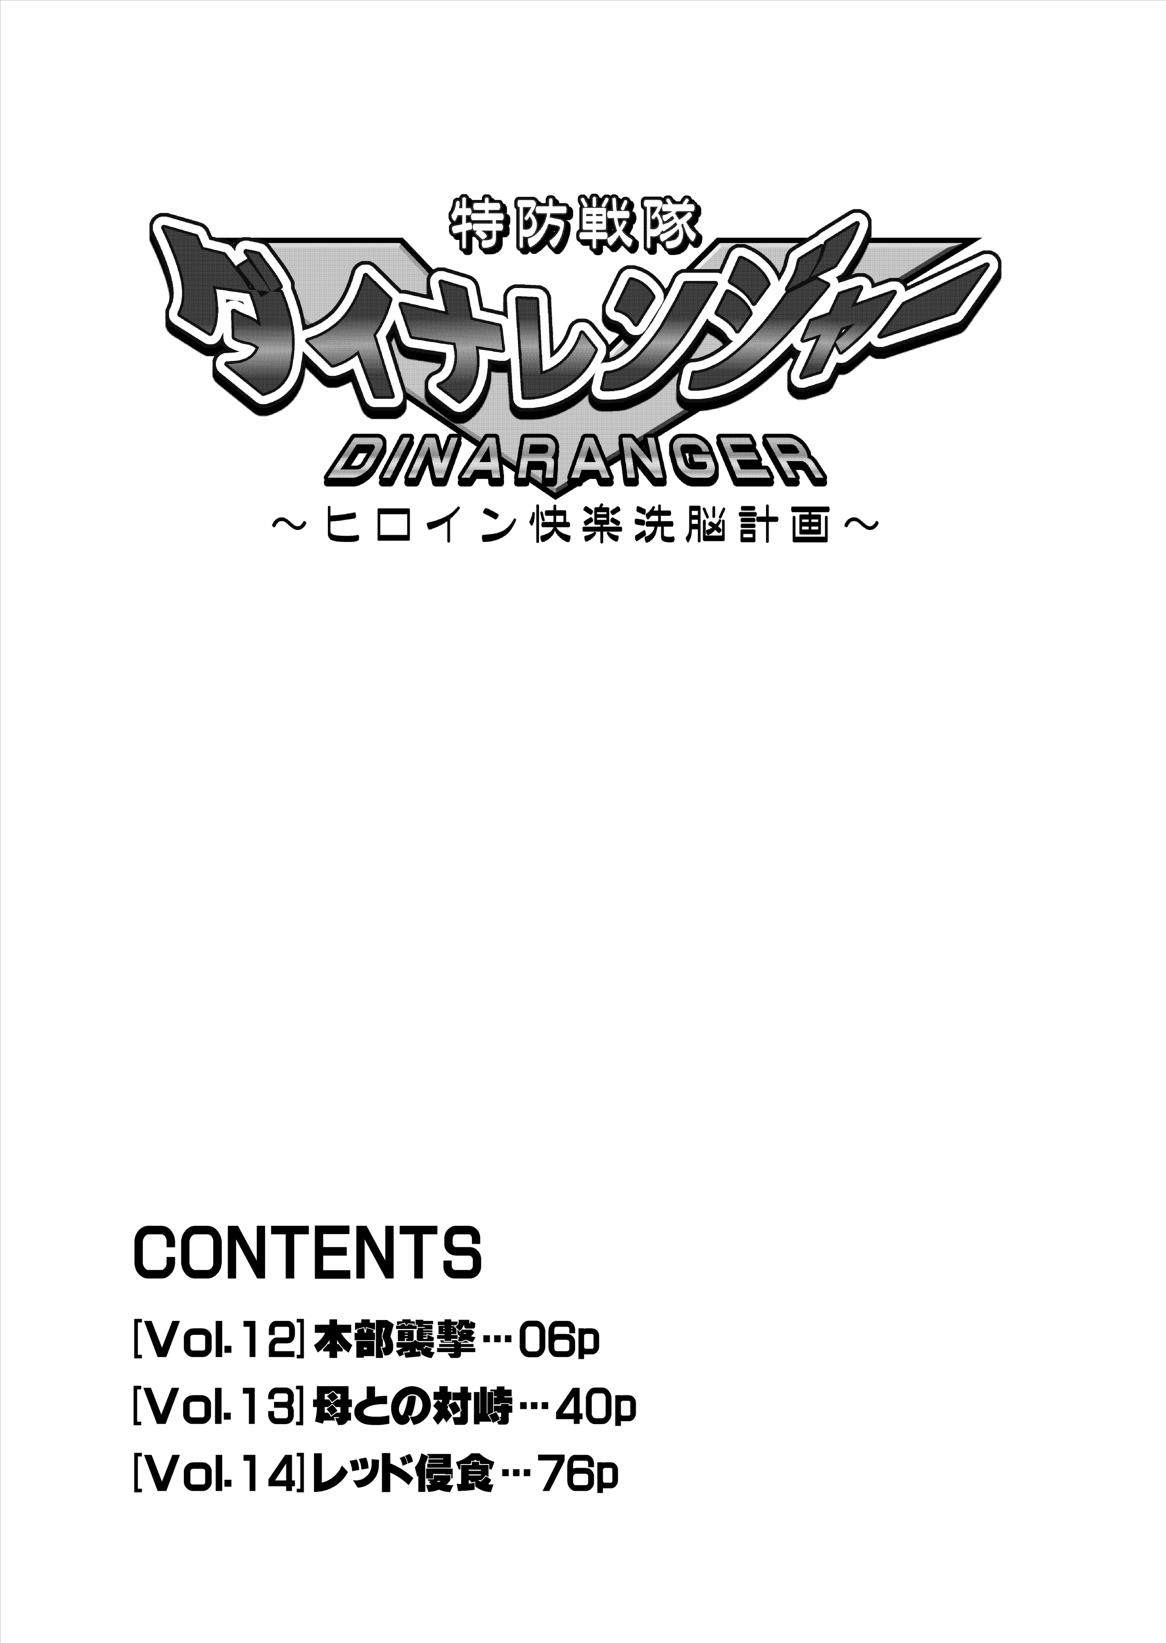 [Macxe's] Dina Ranger - Vol.12-14  [Eng] by Saha 5